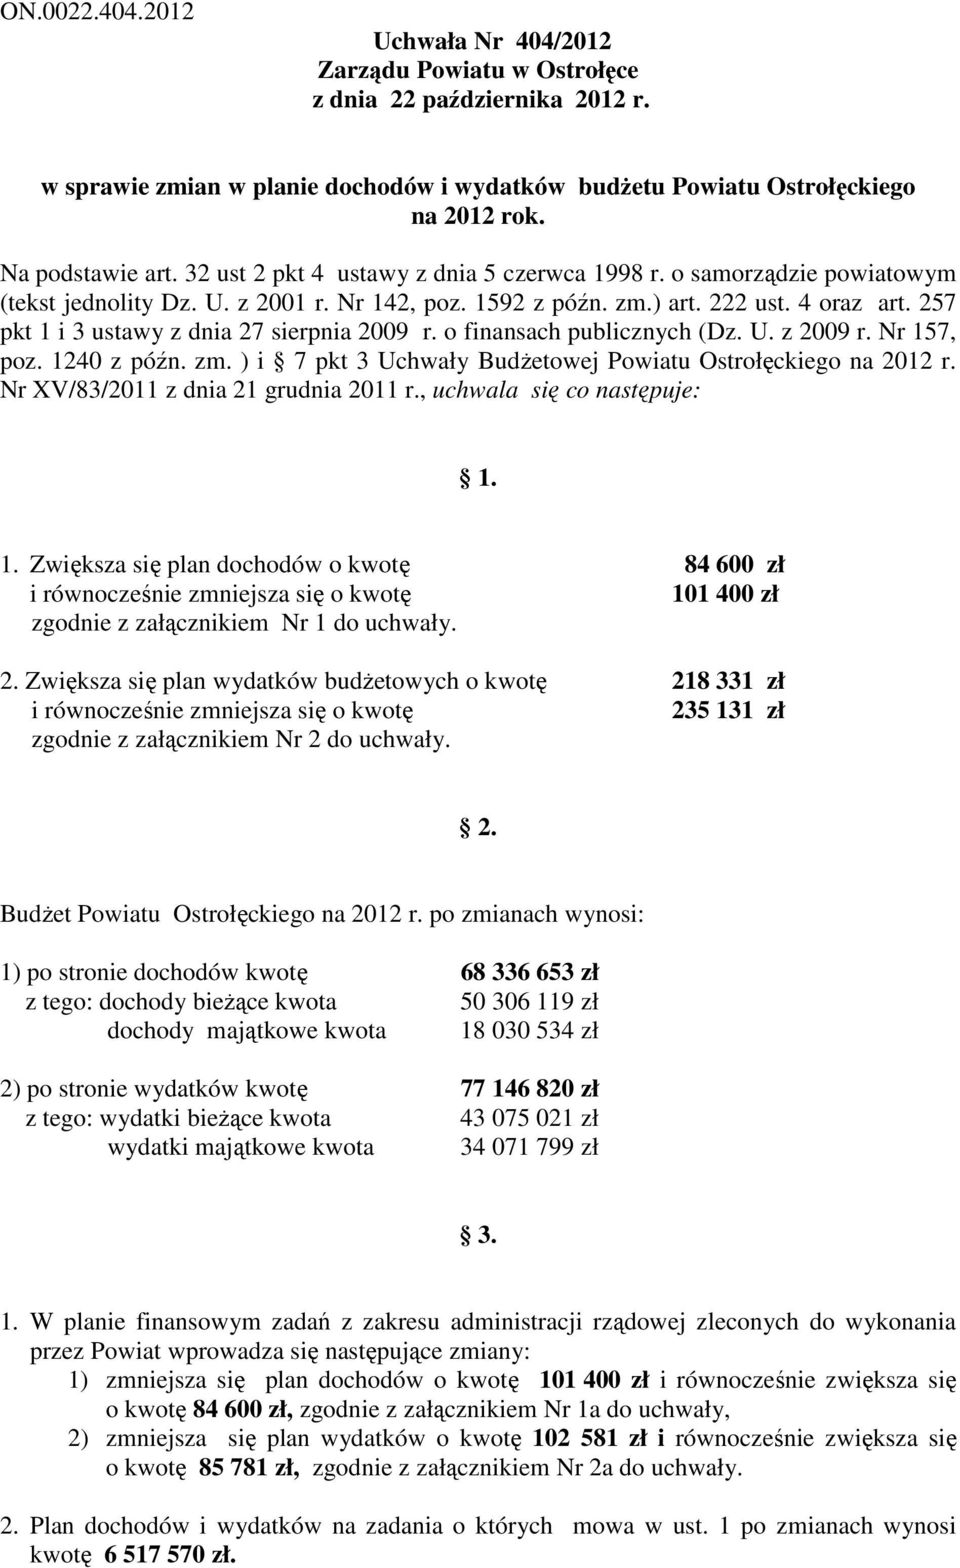 Nr 157, poz. 1240 z późn. zm. ) i 7 pkt 3 Uchwały Budżetowej Powiatu Ostrołęckiego na 2012 r. Nr XV/83/2011 z dnia 21 grudnia 2011 r., uchwala się co następuje: 1. 1. Zwiększa się plan dochodów o kwotę 84 600 zł i równocześnie zmniejsza się o kwotę 101 400 zł zgodnie z załącznikiem Nr 1 do uchwały.